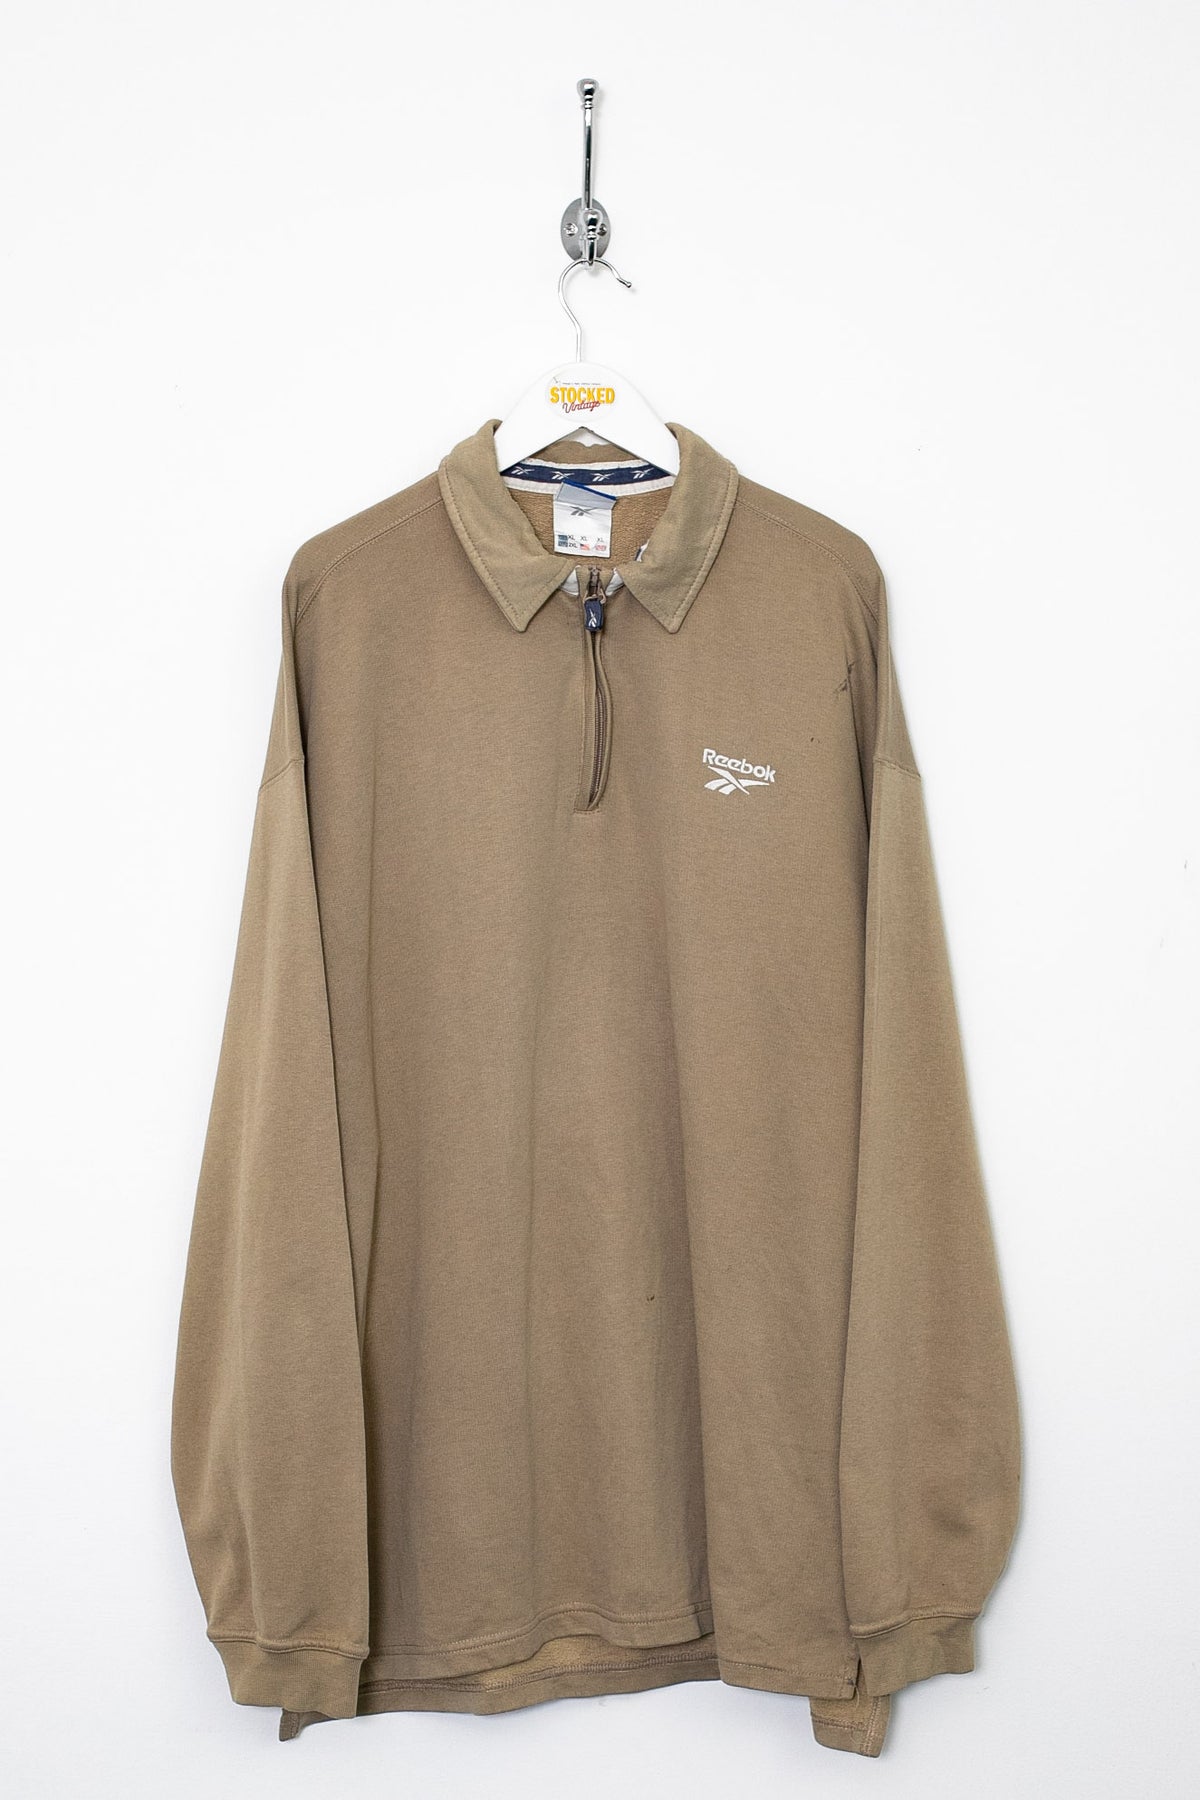 00s Reebok 1/4 Zip Sweatshirt (XL)